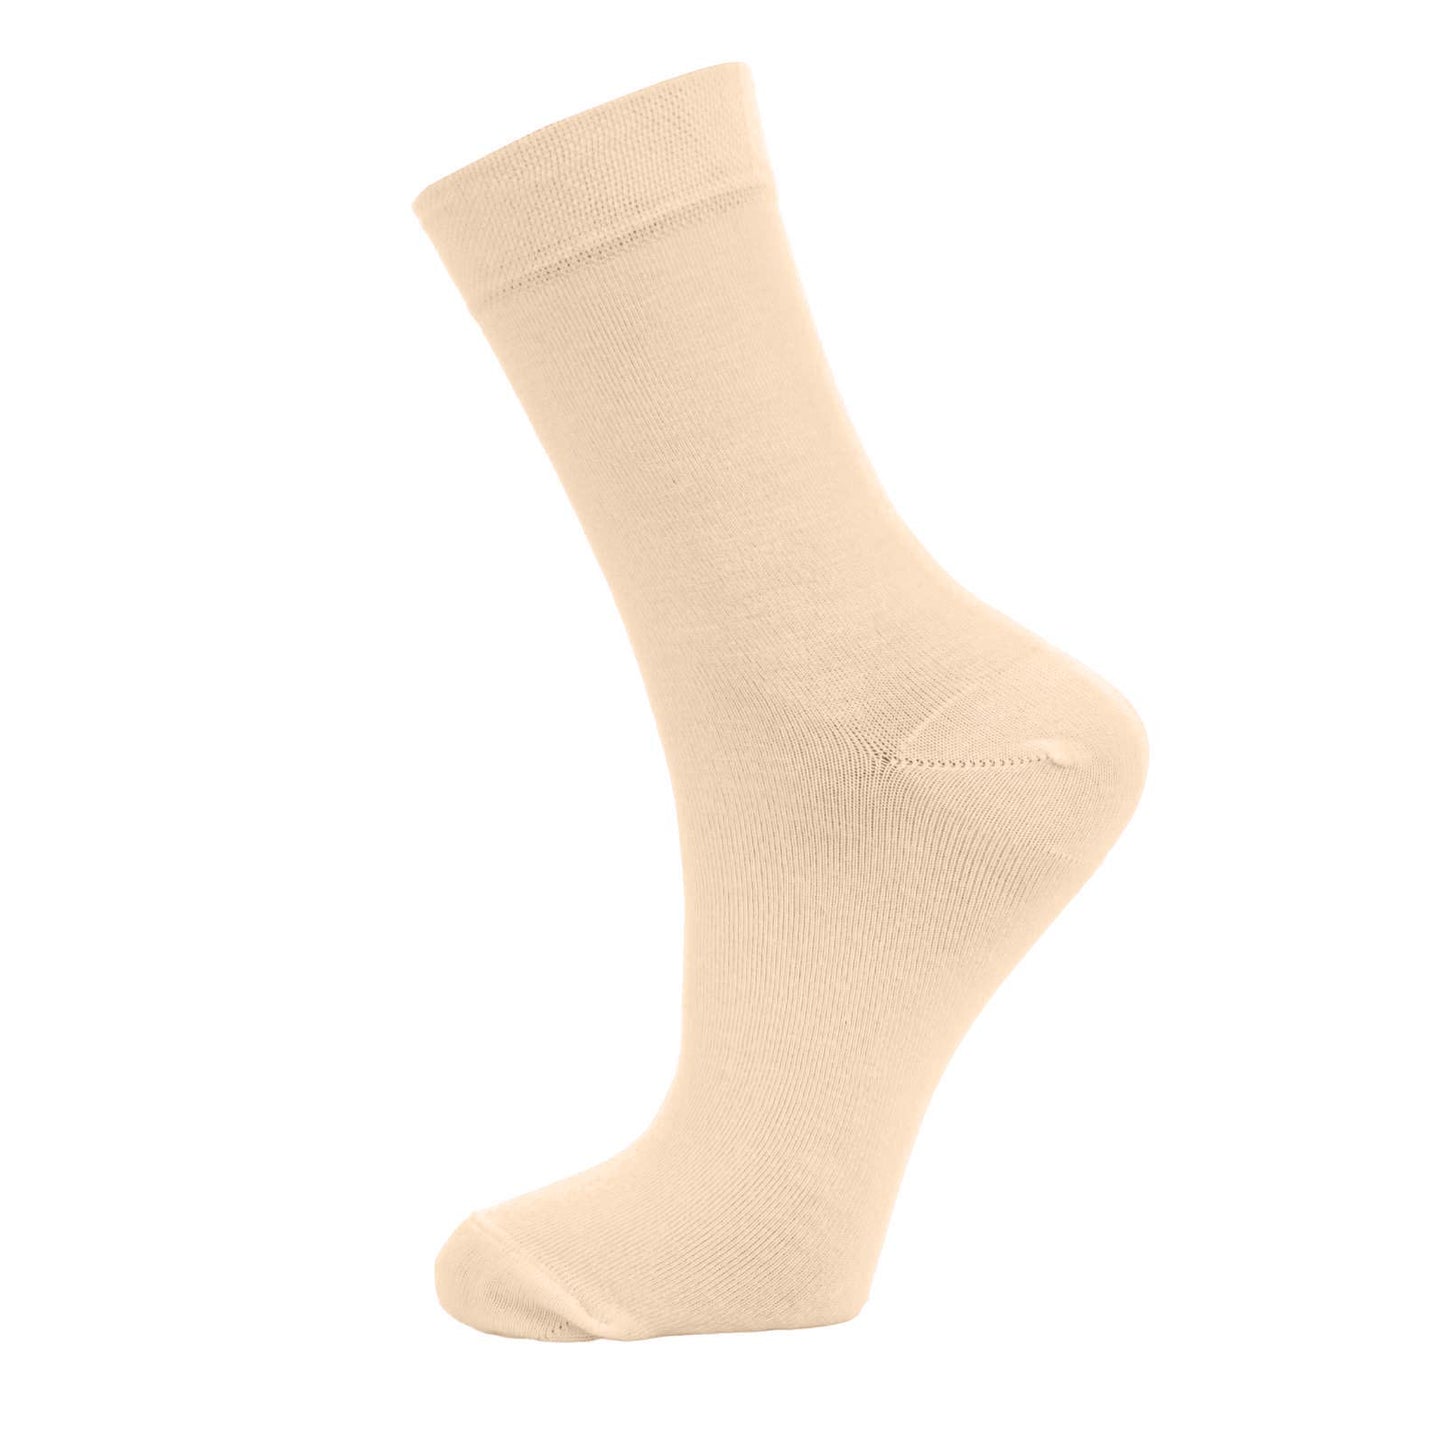 Natural Bamboo Socks 6 Pairs Antibiotic Business Crew Socks for Men and Women